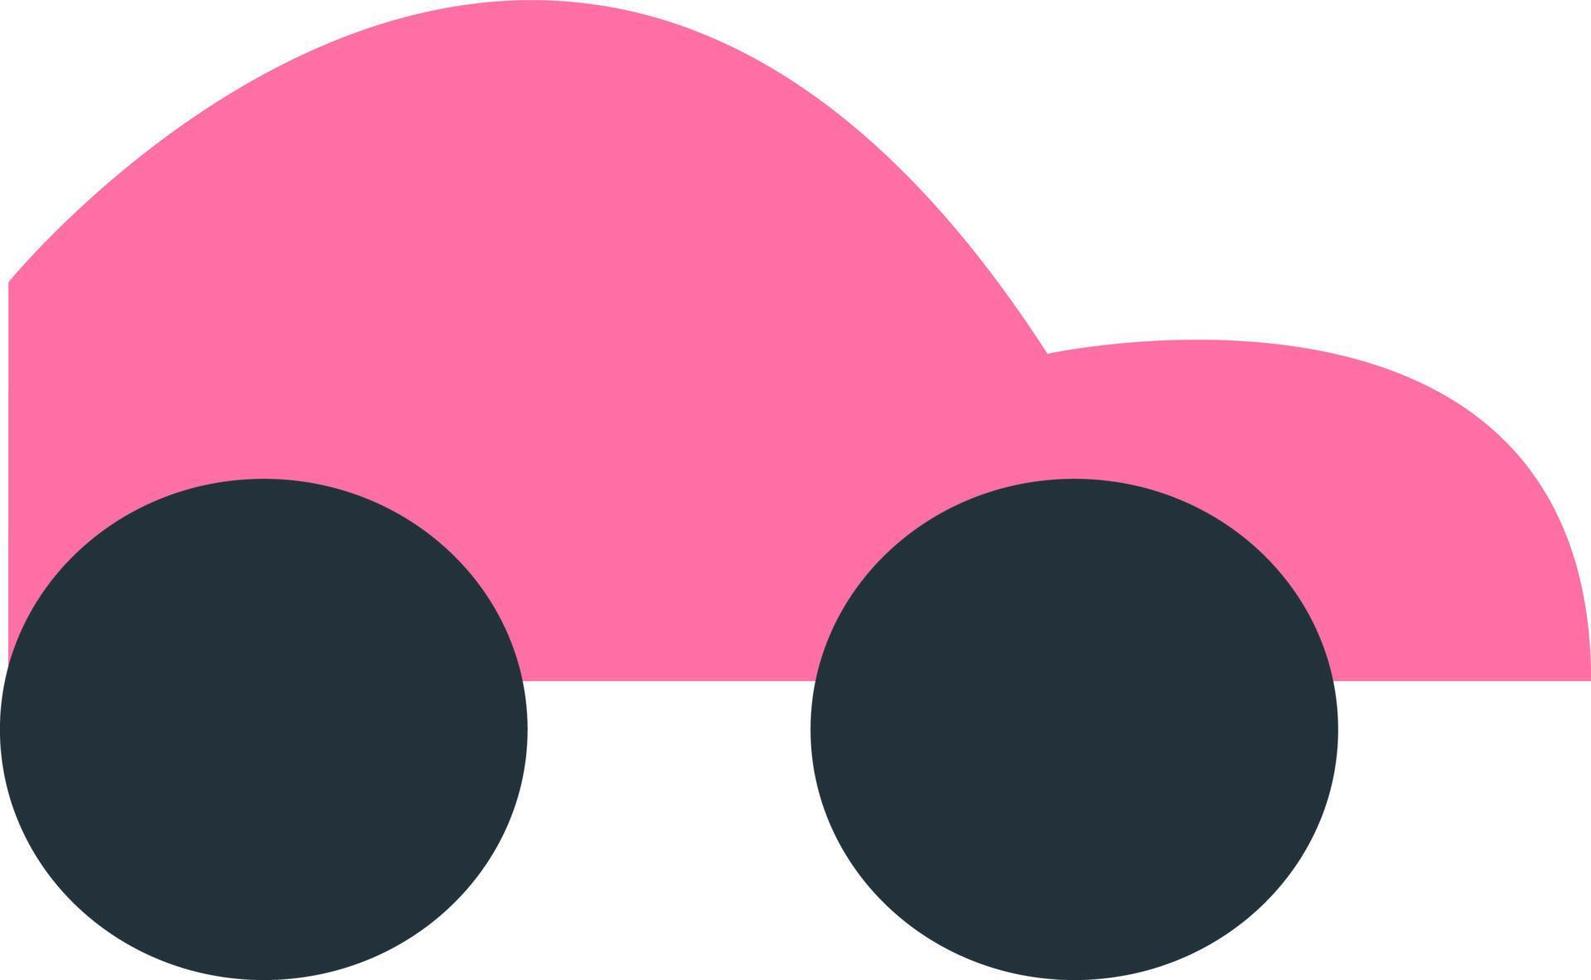 jouet de voiture rose, illustration, vecteur sur fond blanc.